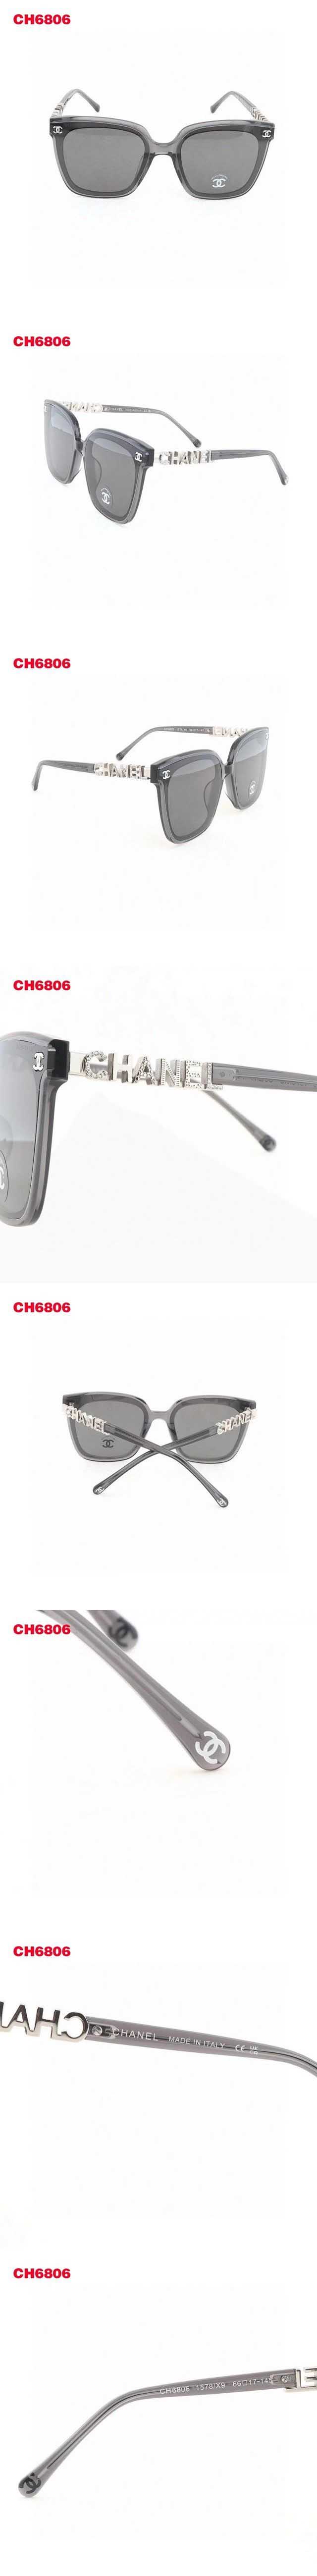 Chanel Clear Gray Sunglasses シャネル クリアグレー サングラス